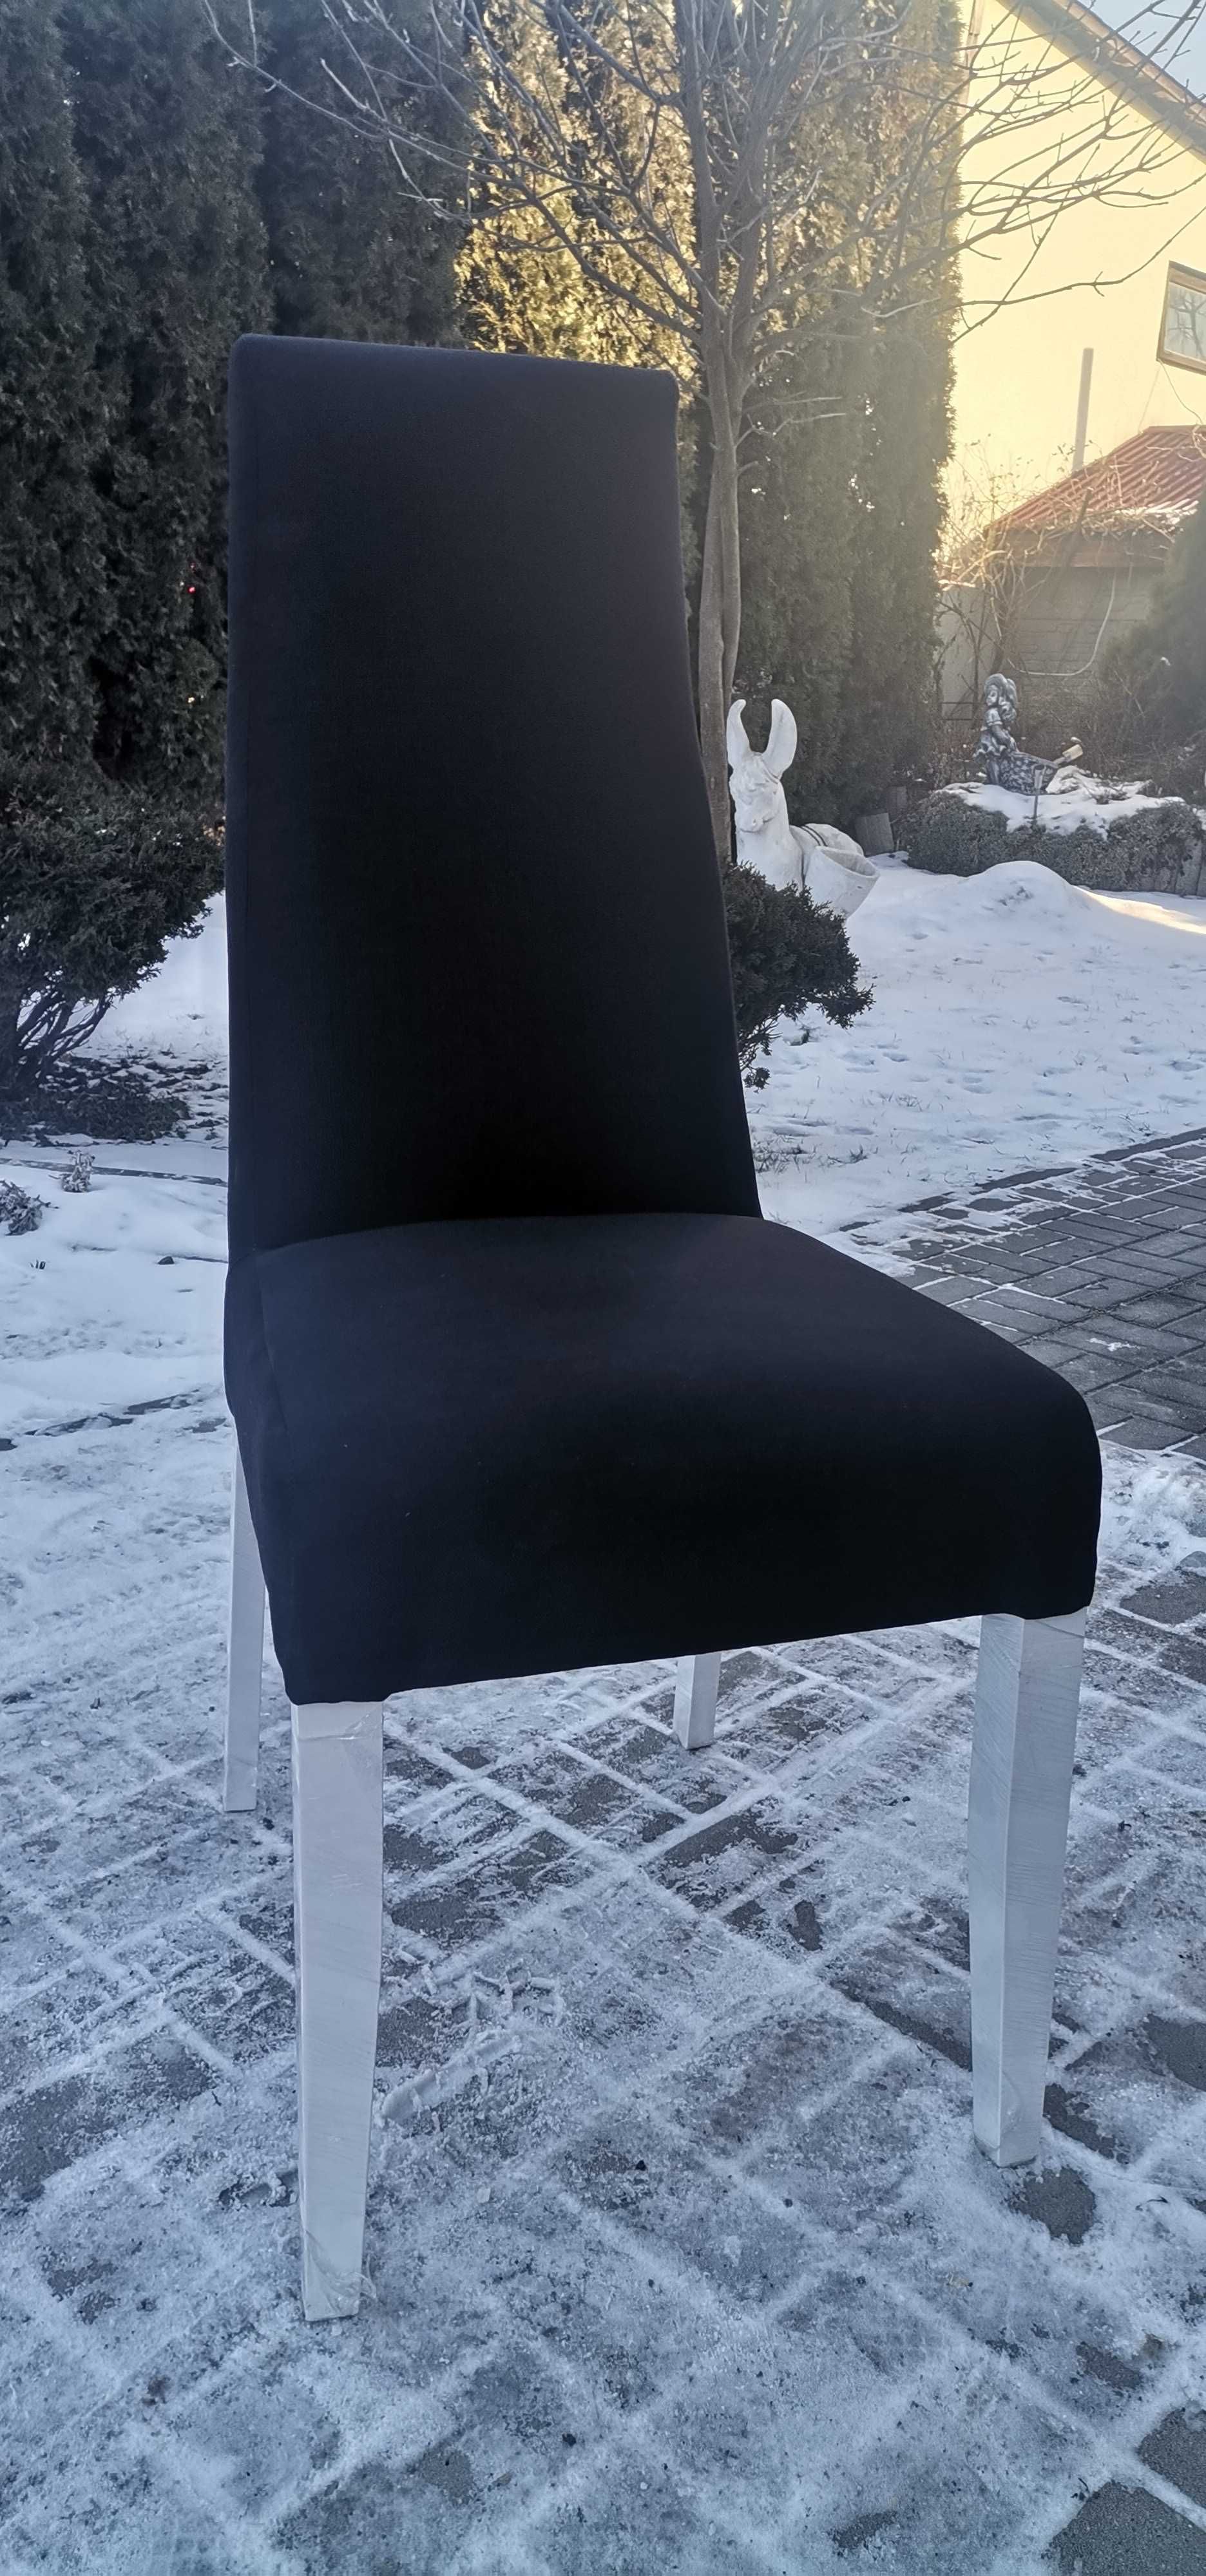 Krzesło, Krzesła tapicerowane, fotelikowe, Nowe z gwarancją